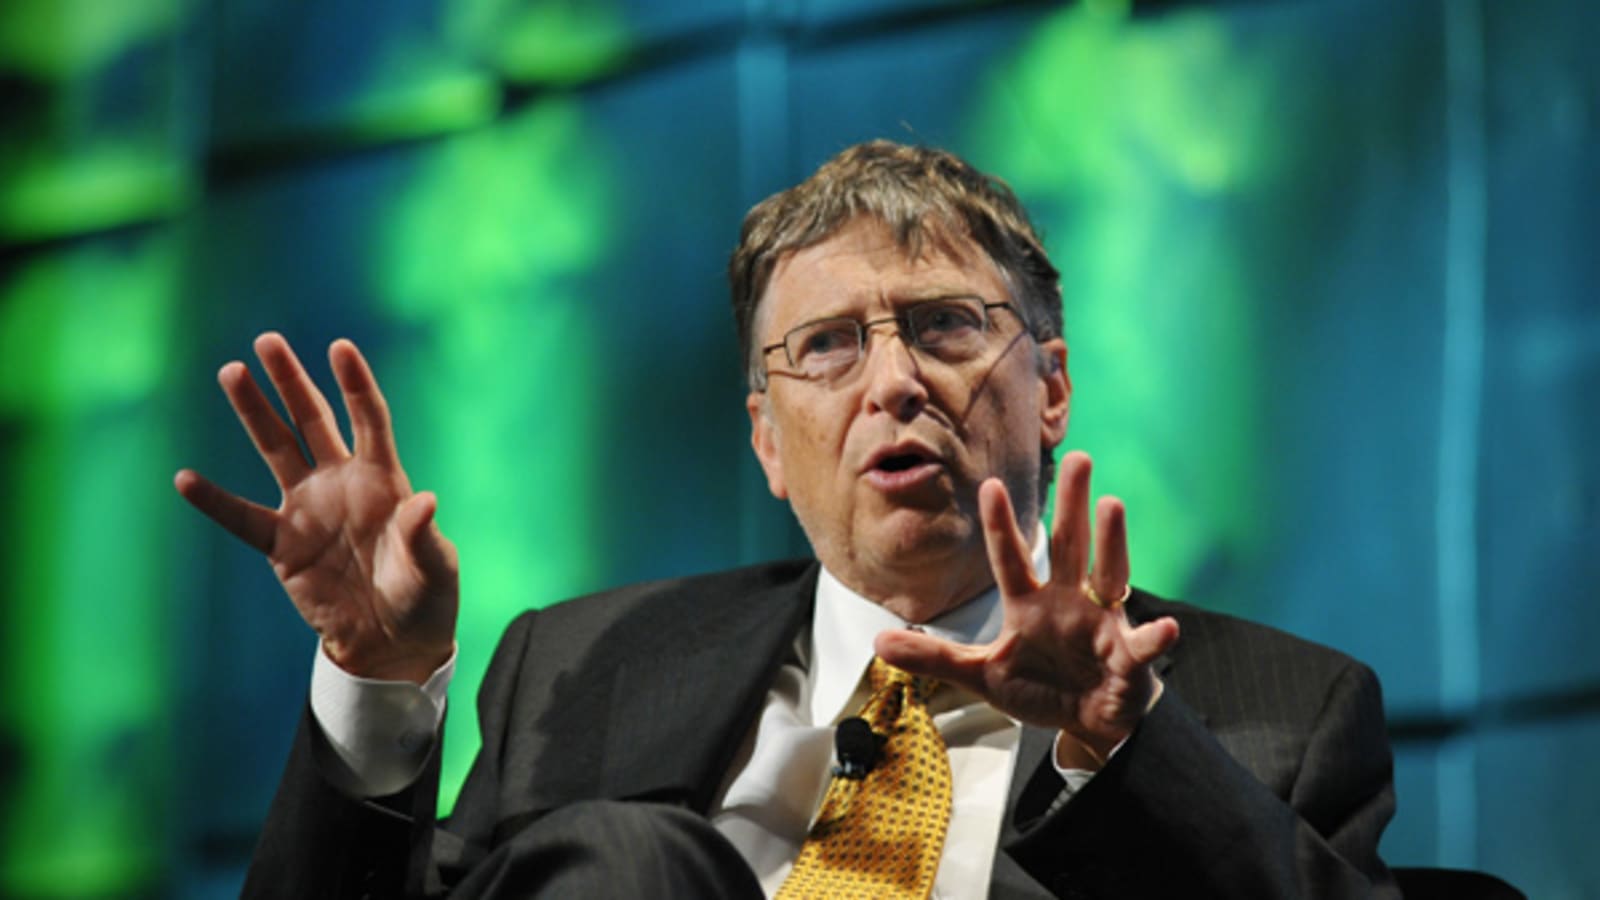 Was Bill Gates a tough boss?